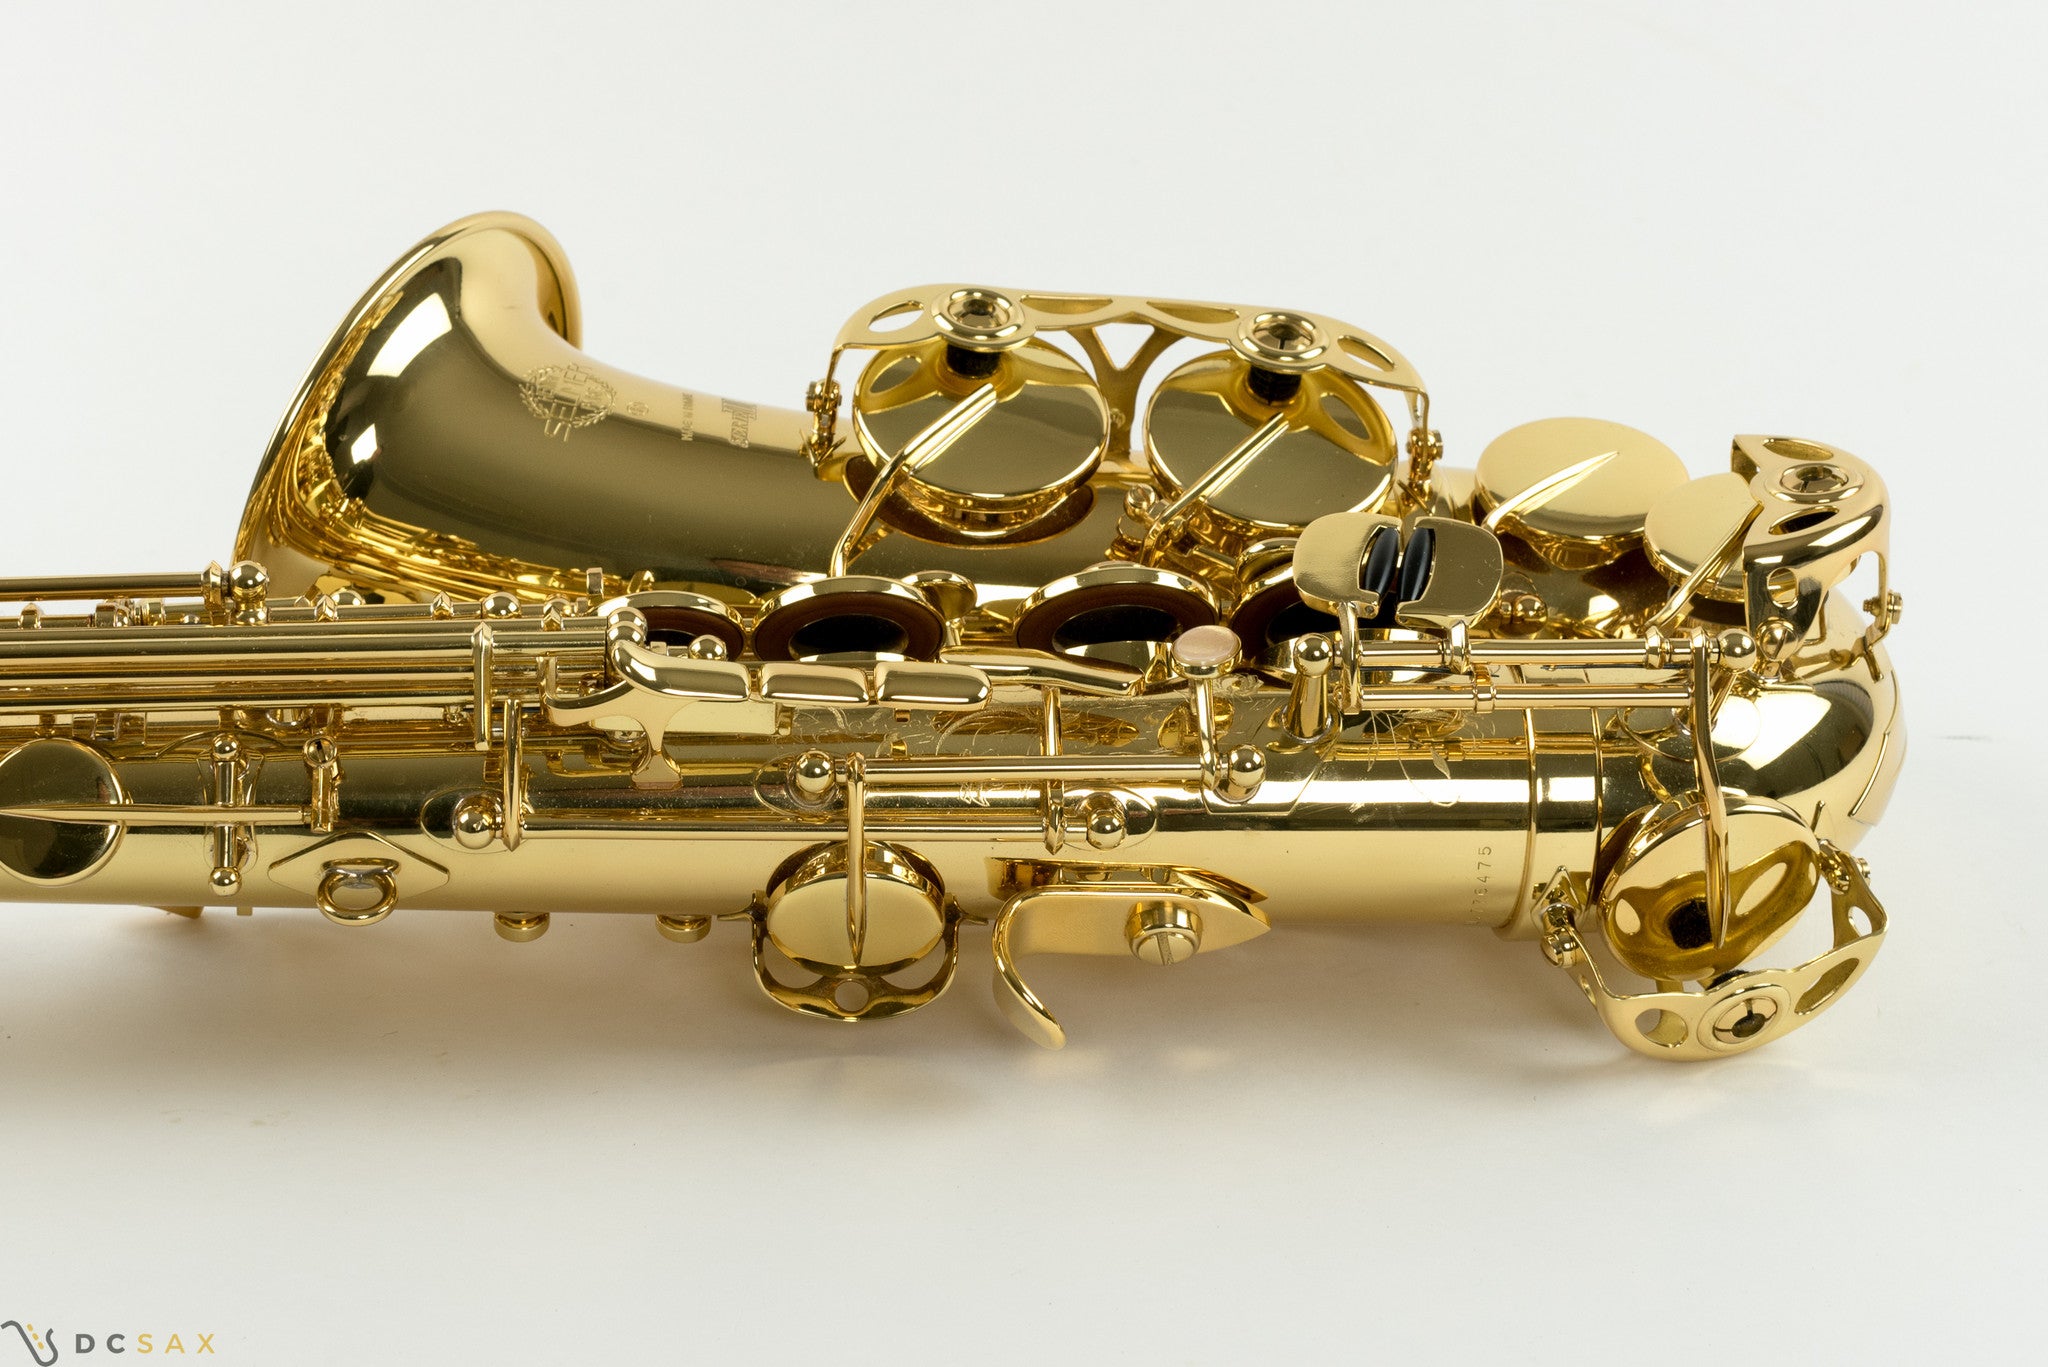 Selmer Series III Jubilee Alto Saxophone NEAR MINT